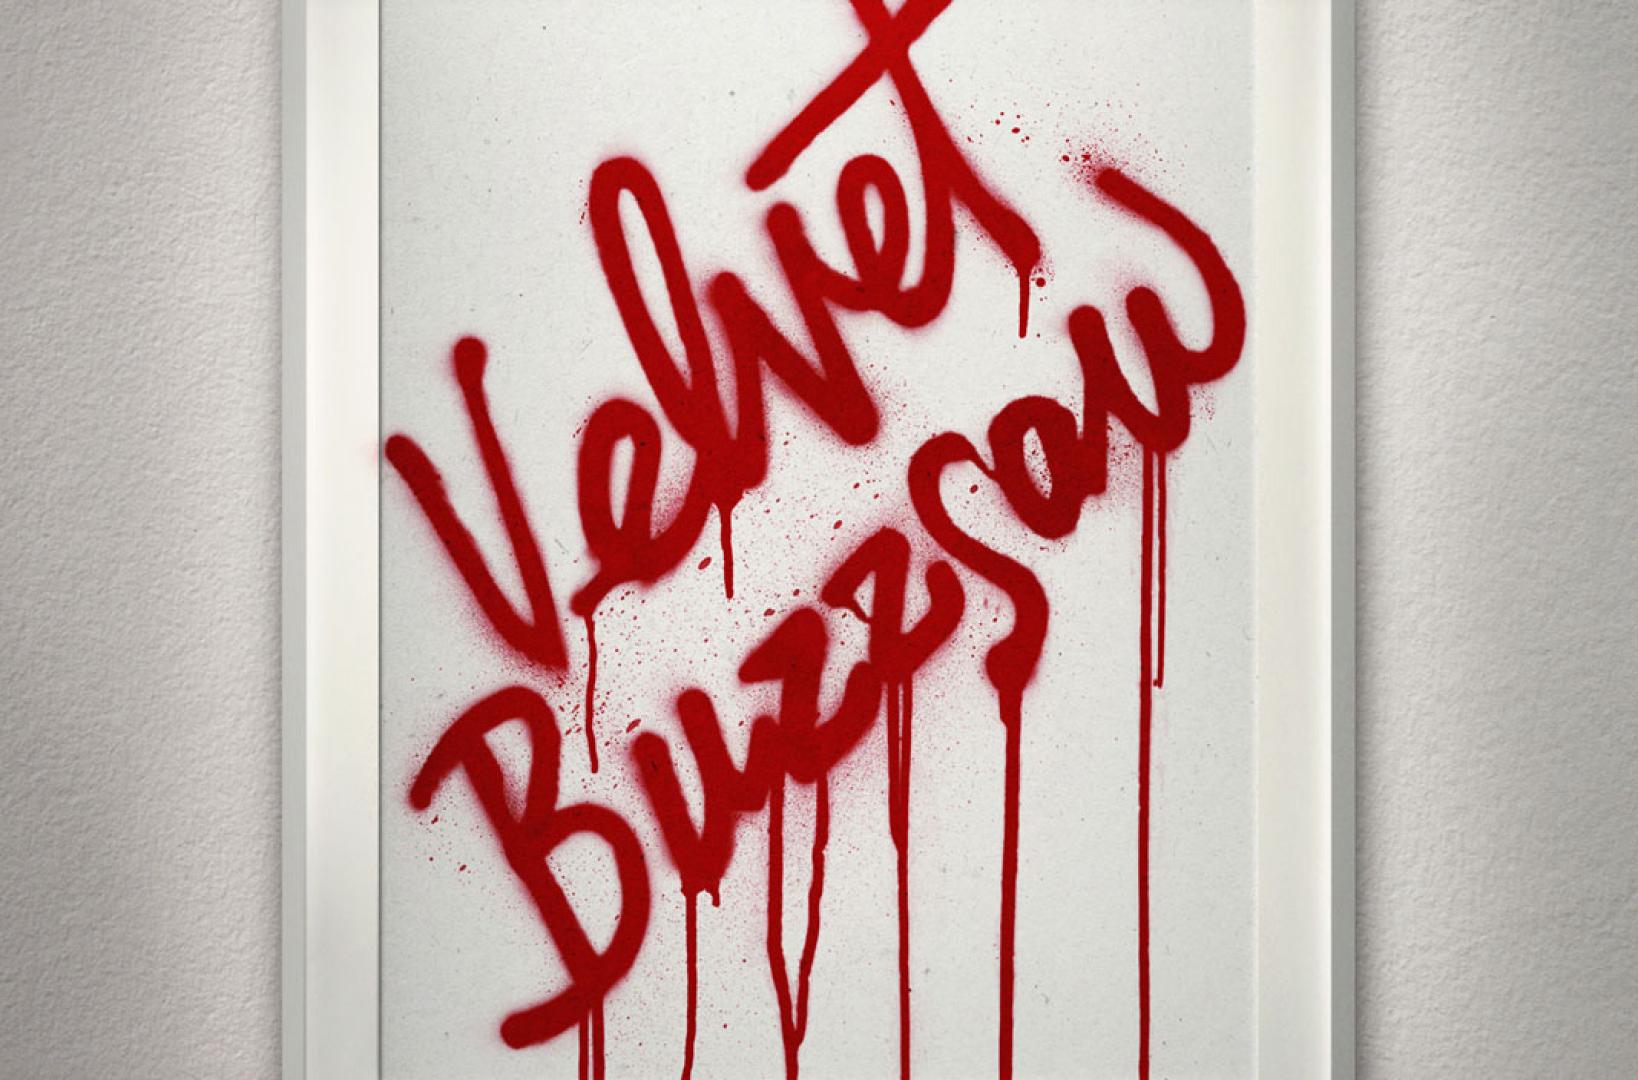 Velvet Buzzsaw (2019)